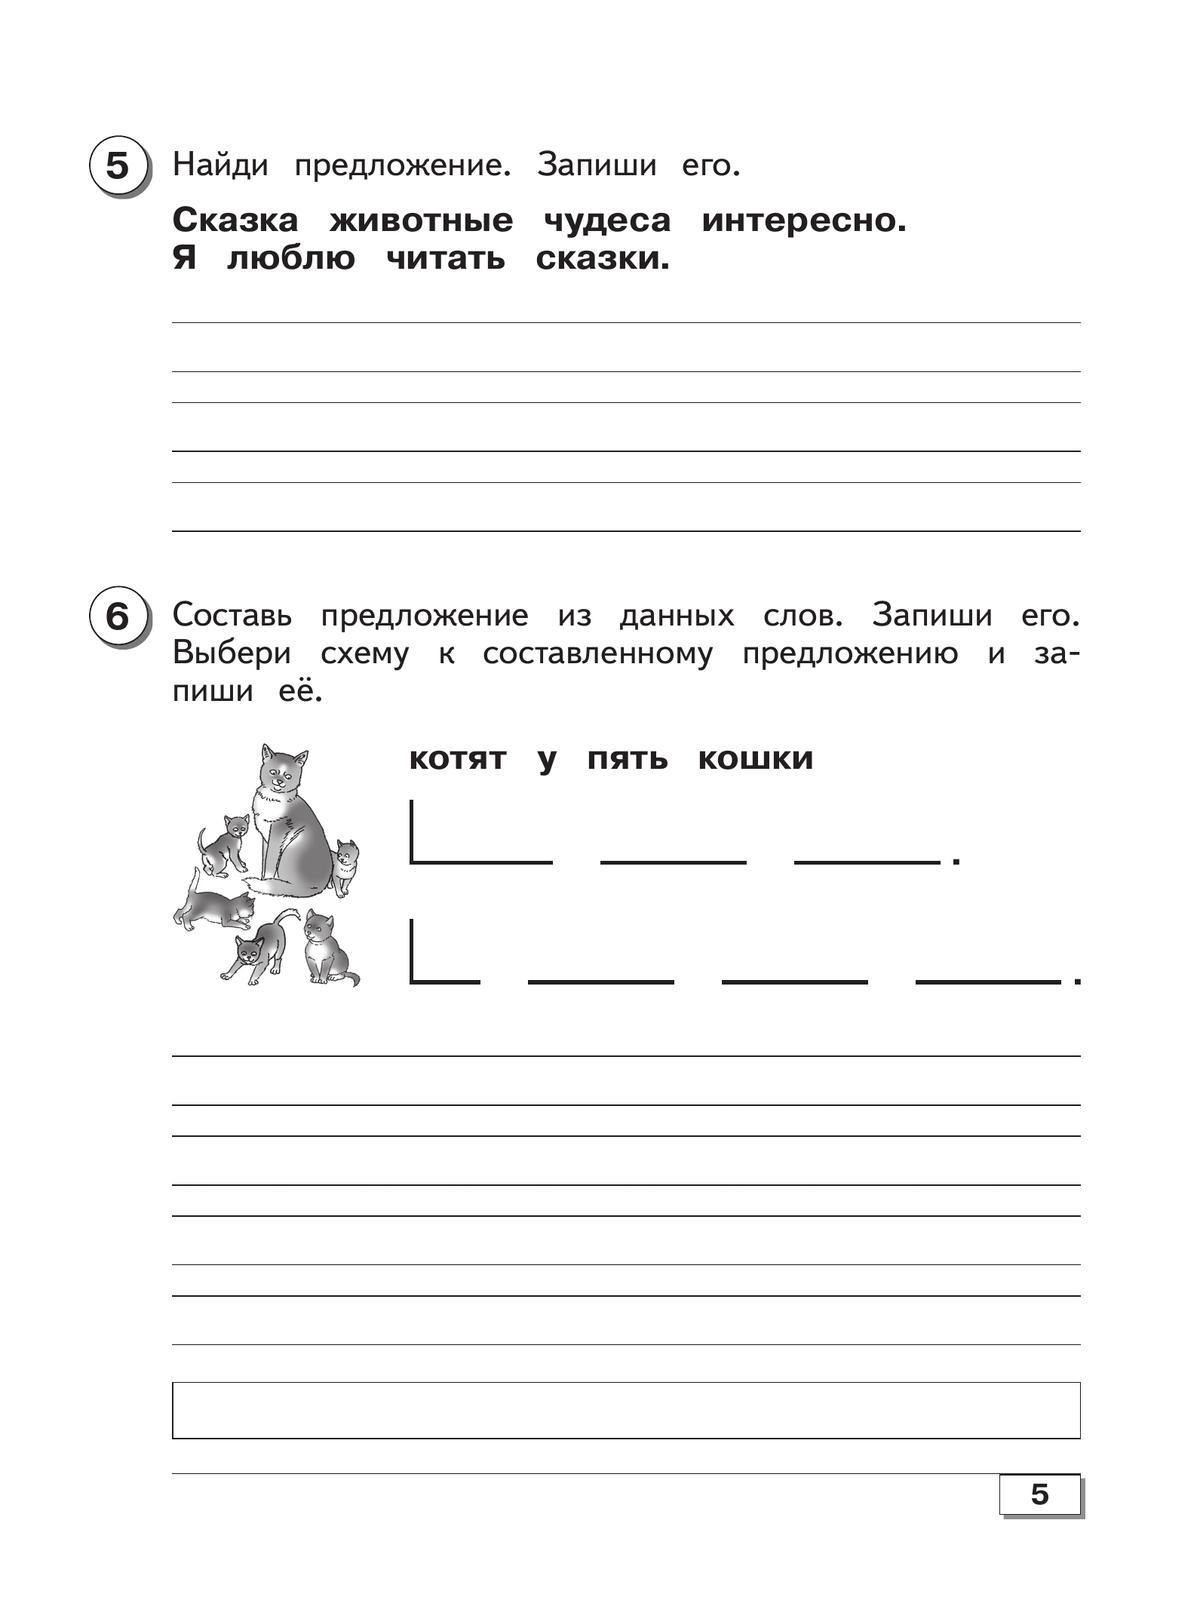 Русский язык. 3 класс. Проверочные работы (для обучающихся с интеллектуальными нарушениями) 6